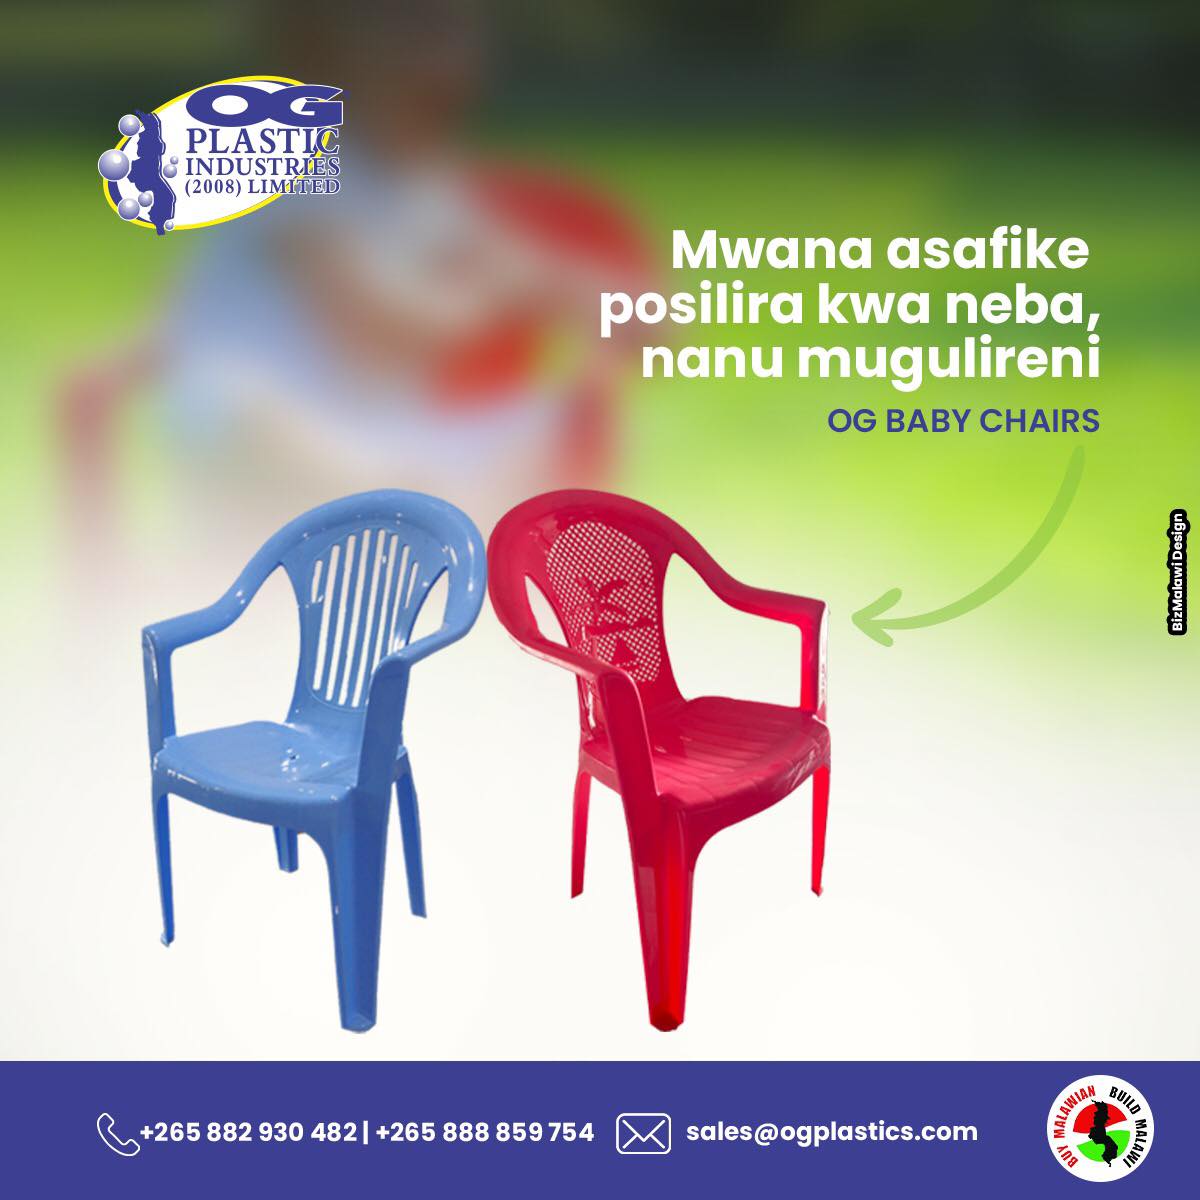 Mwana nayenso akufunika mpando wake. Mugulireni lero ku OG Plastics.

#OGBabyChairs #BabyEssentials